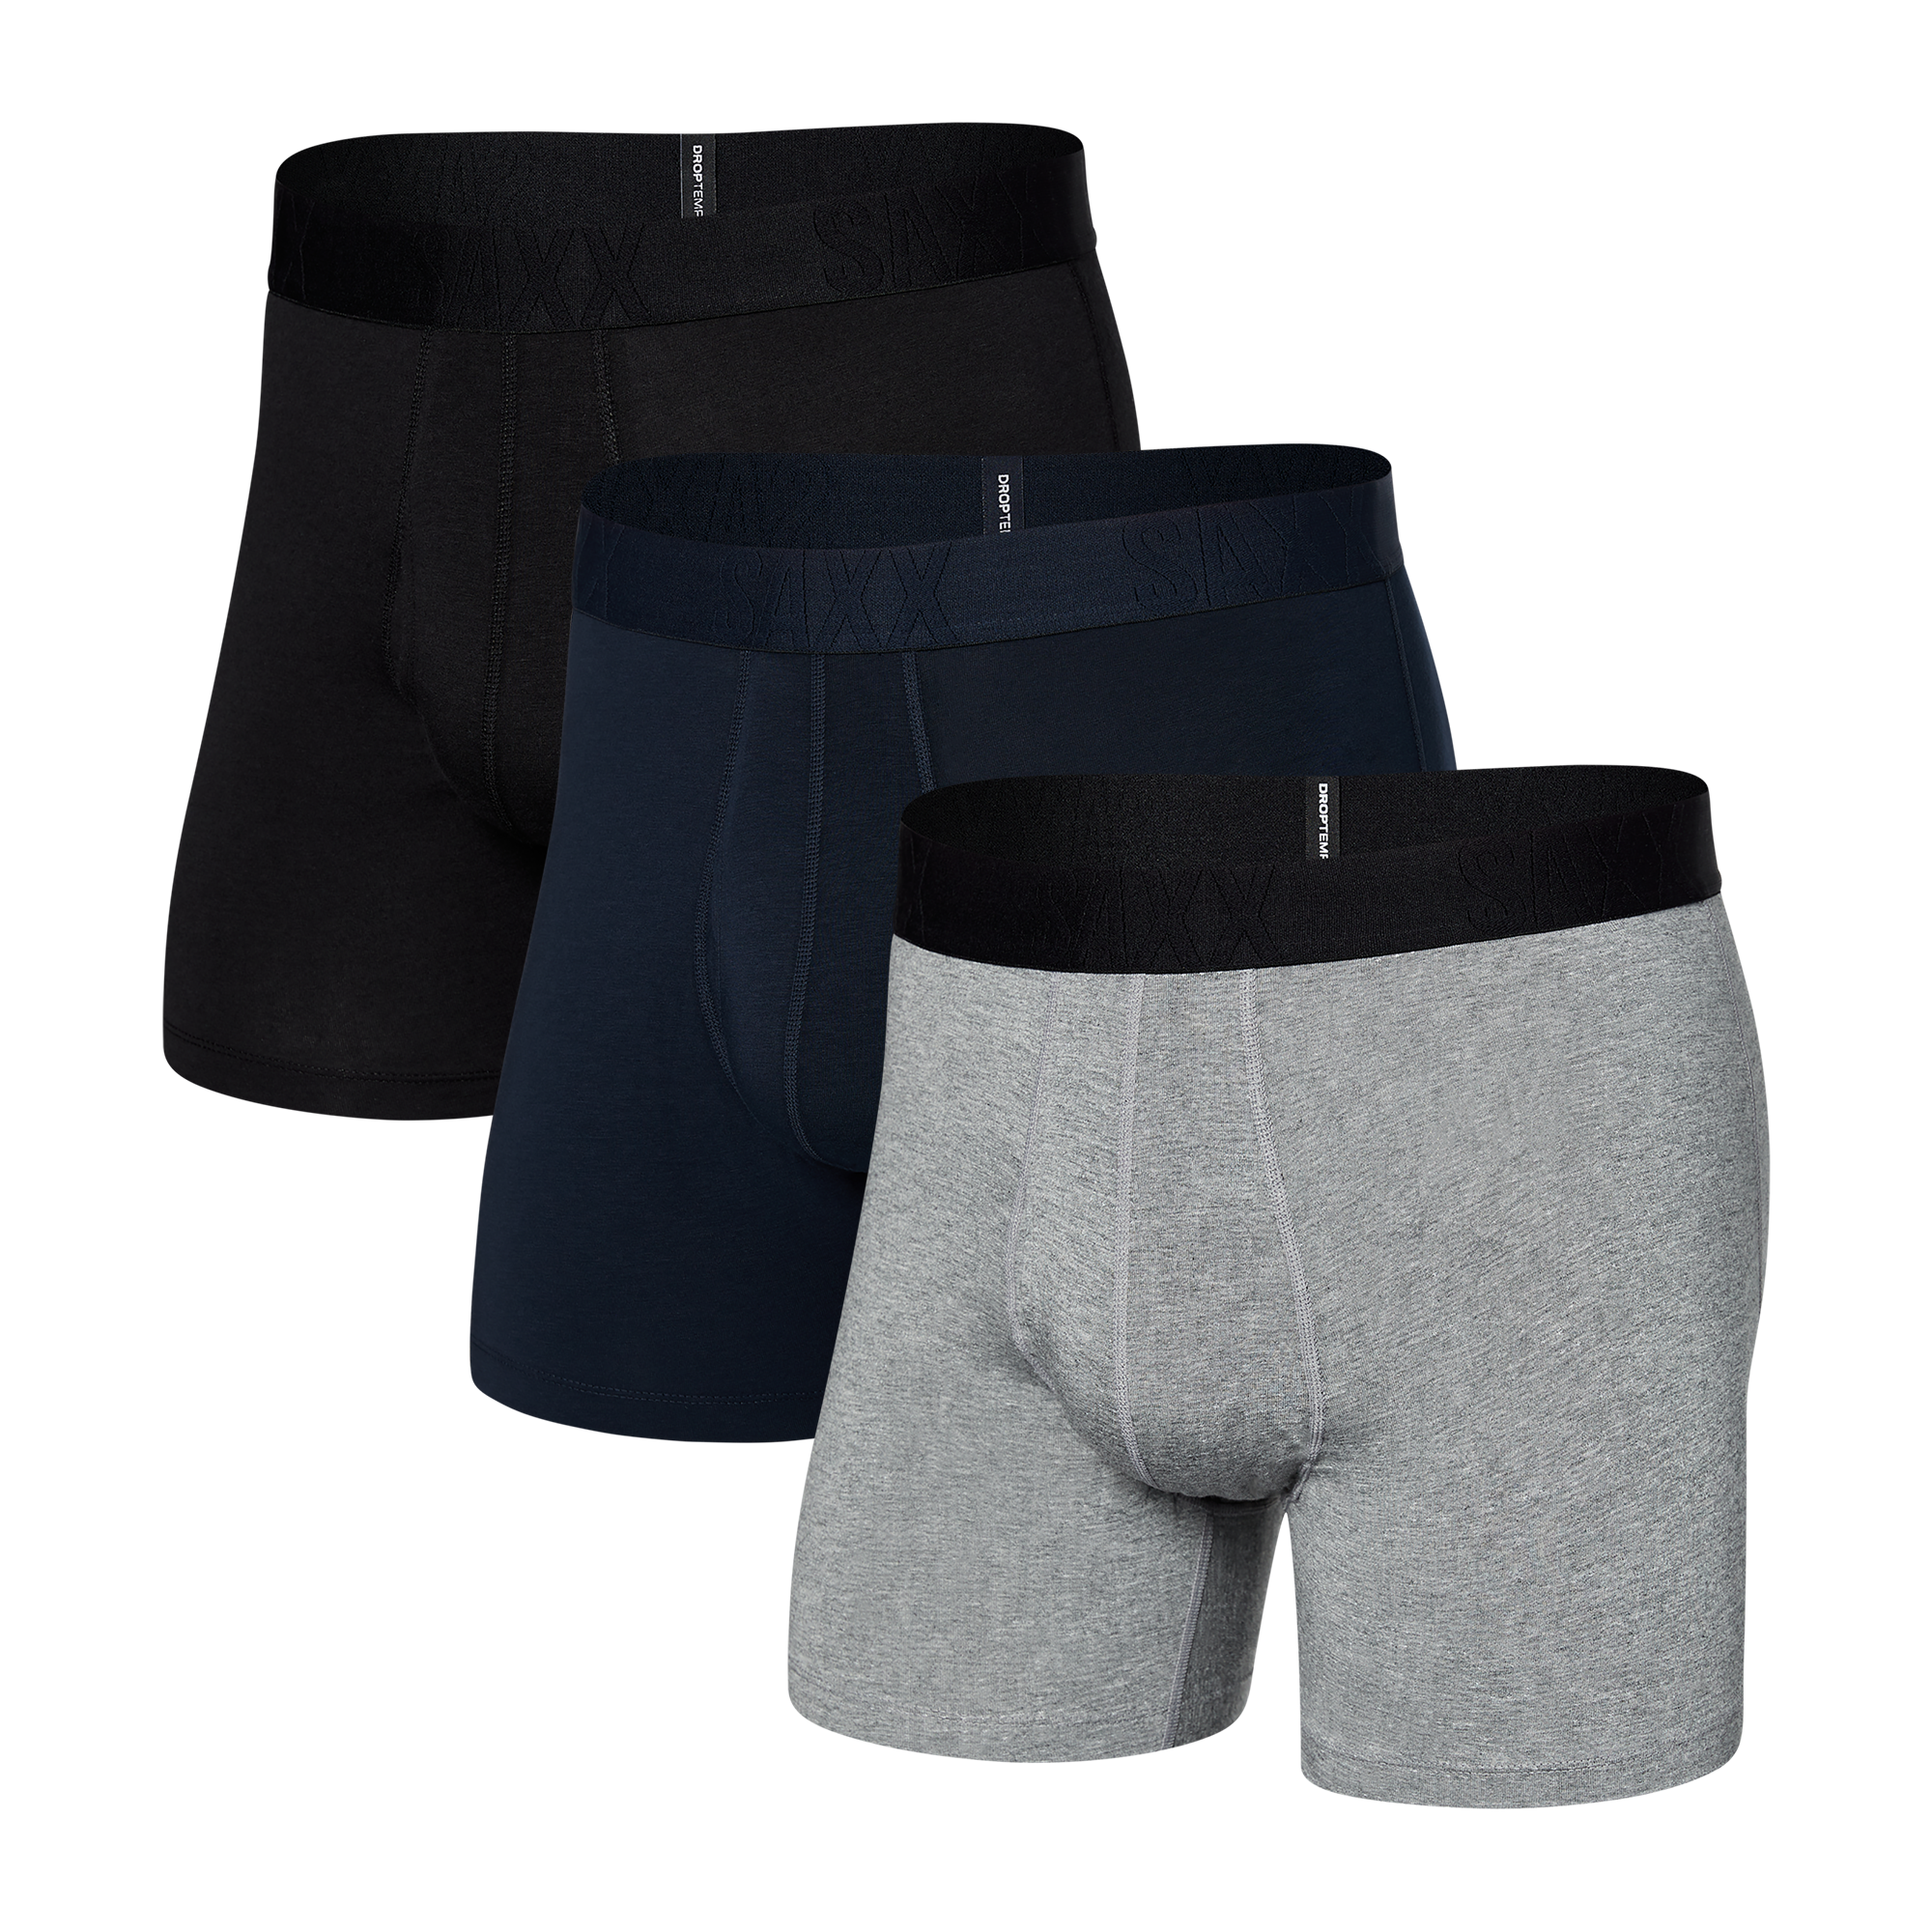 SAXX Underwear® Life Changing Mens Underwear picture